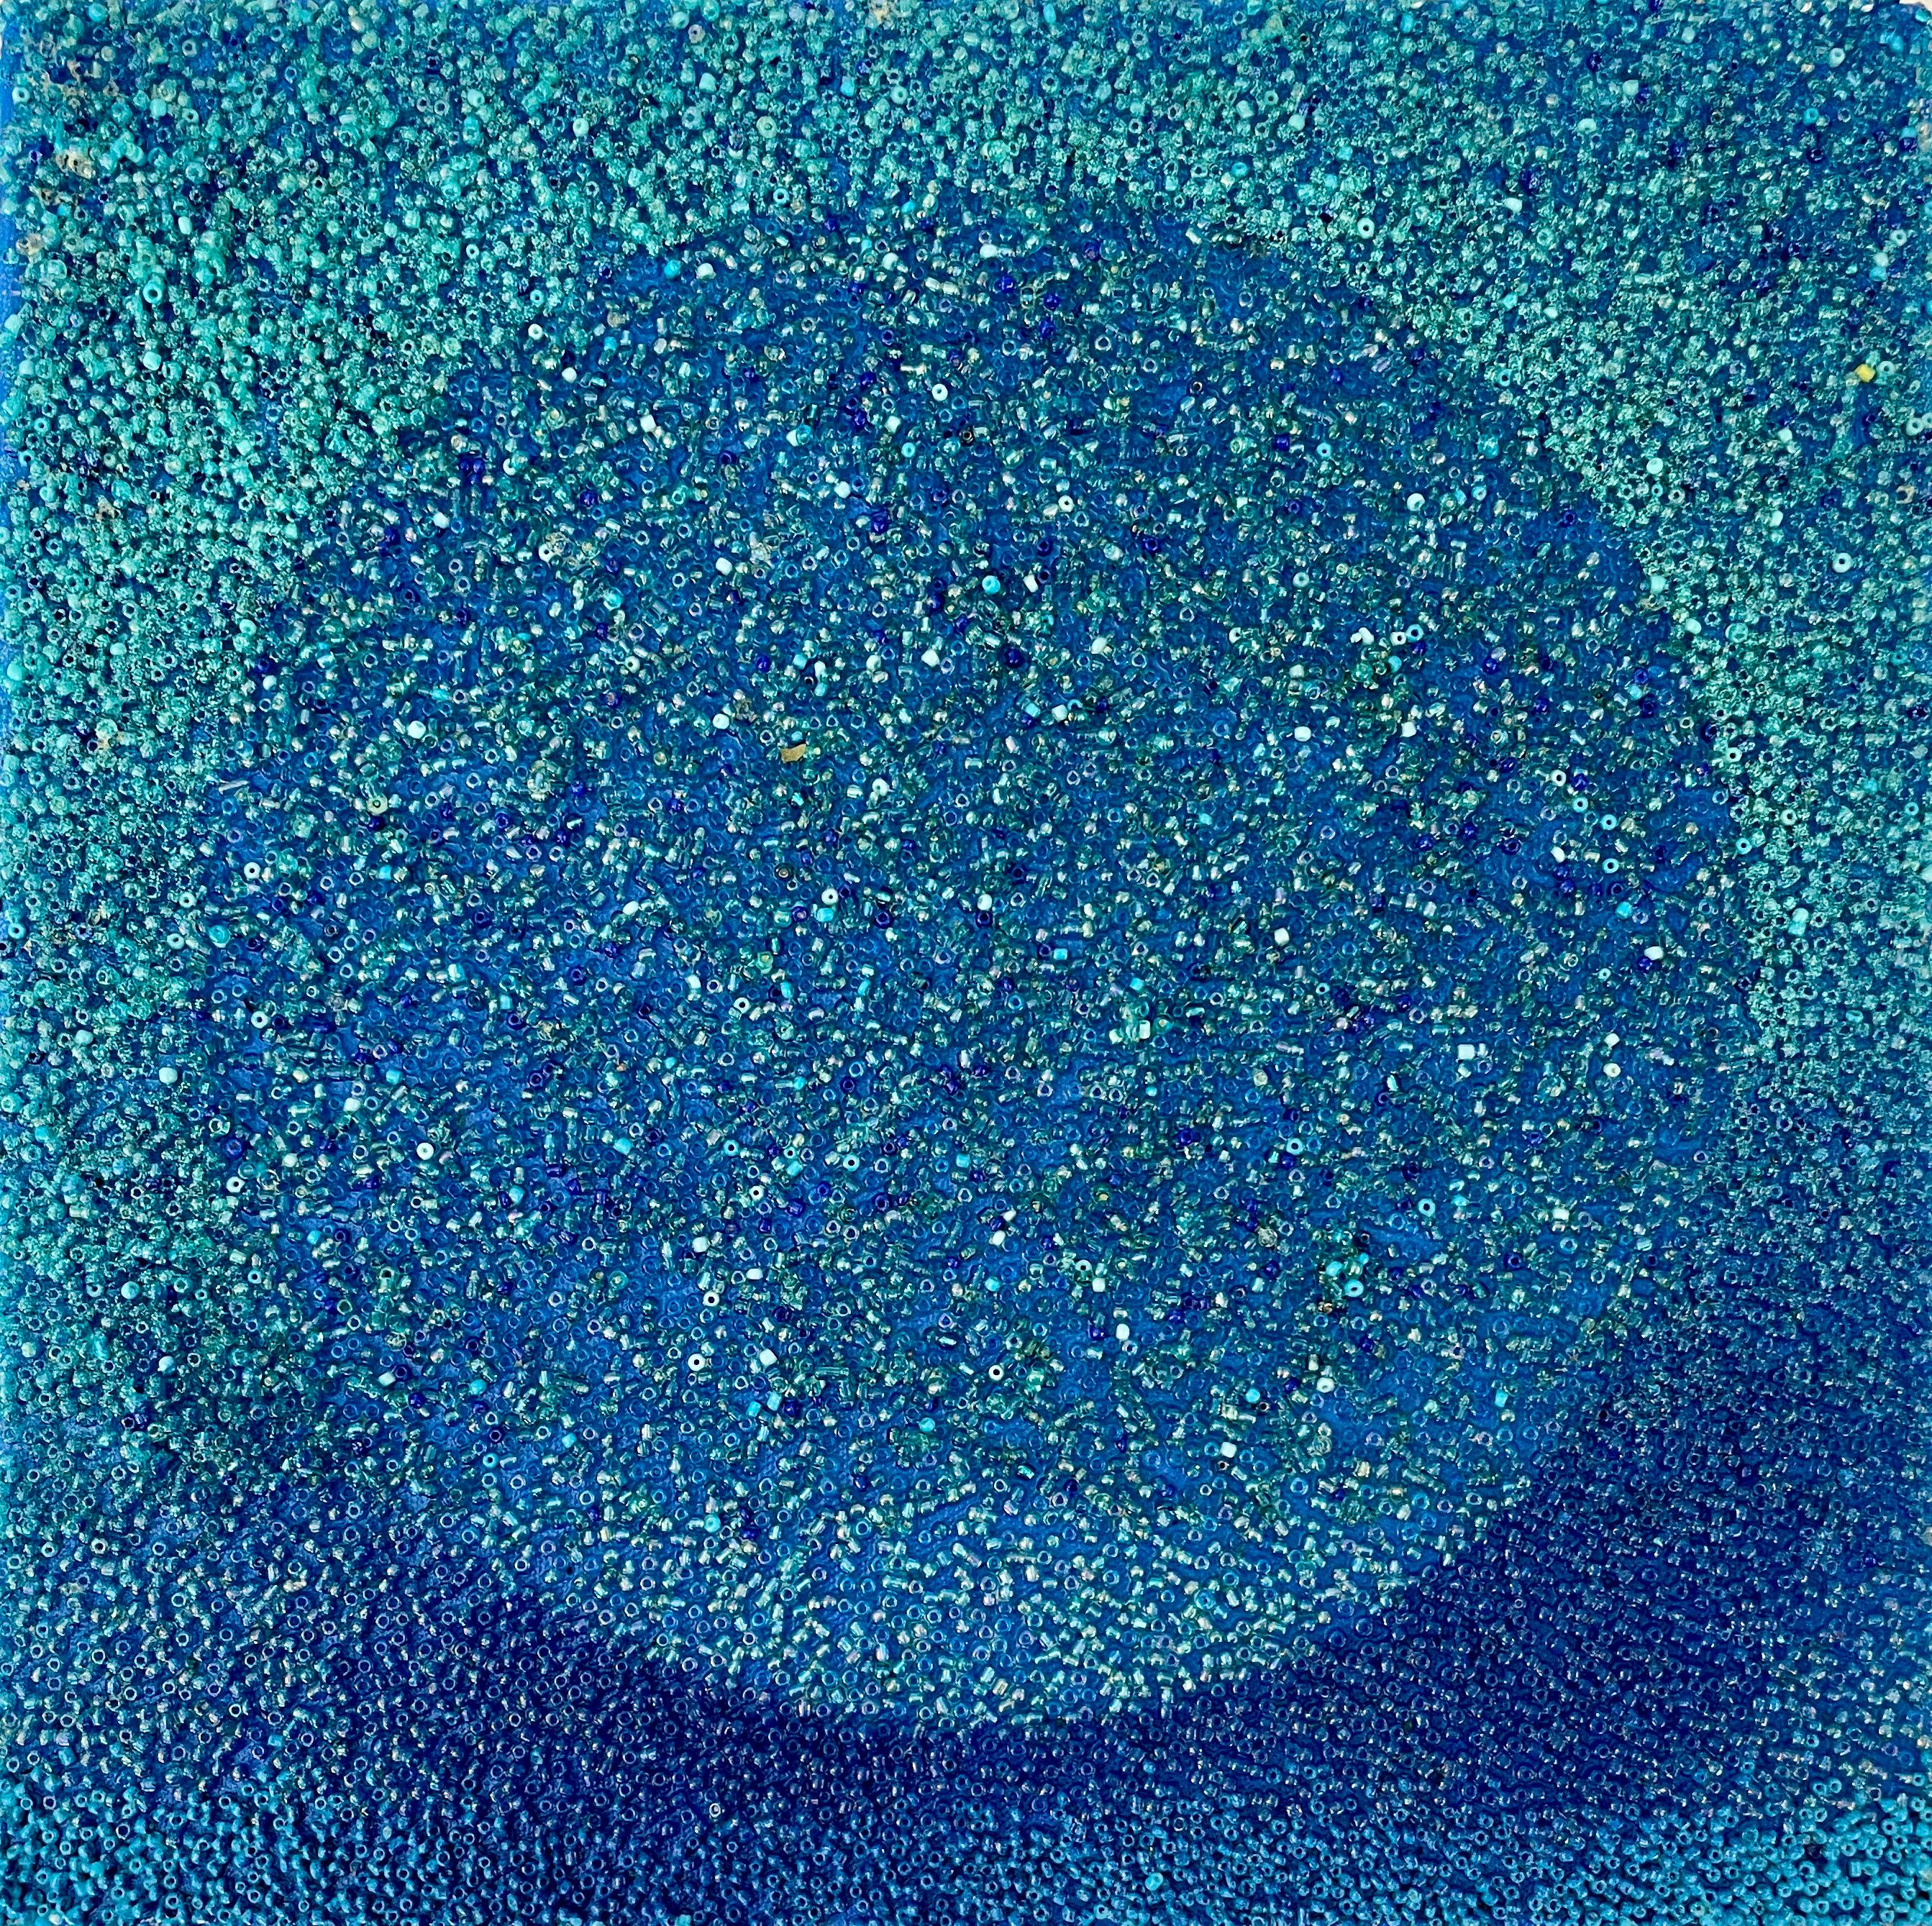 Antonio Puri Abstract Sculpture – Tantra in Blau #11: minimalistische abstrakte Skulptur / Gemälde mit niedrigen Kreisen